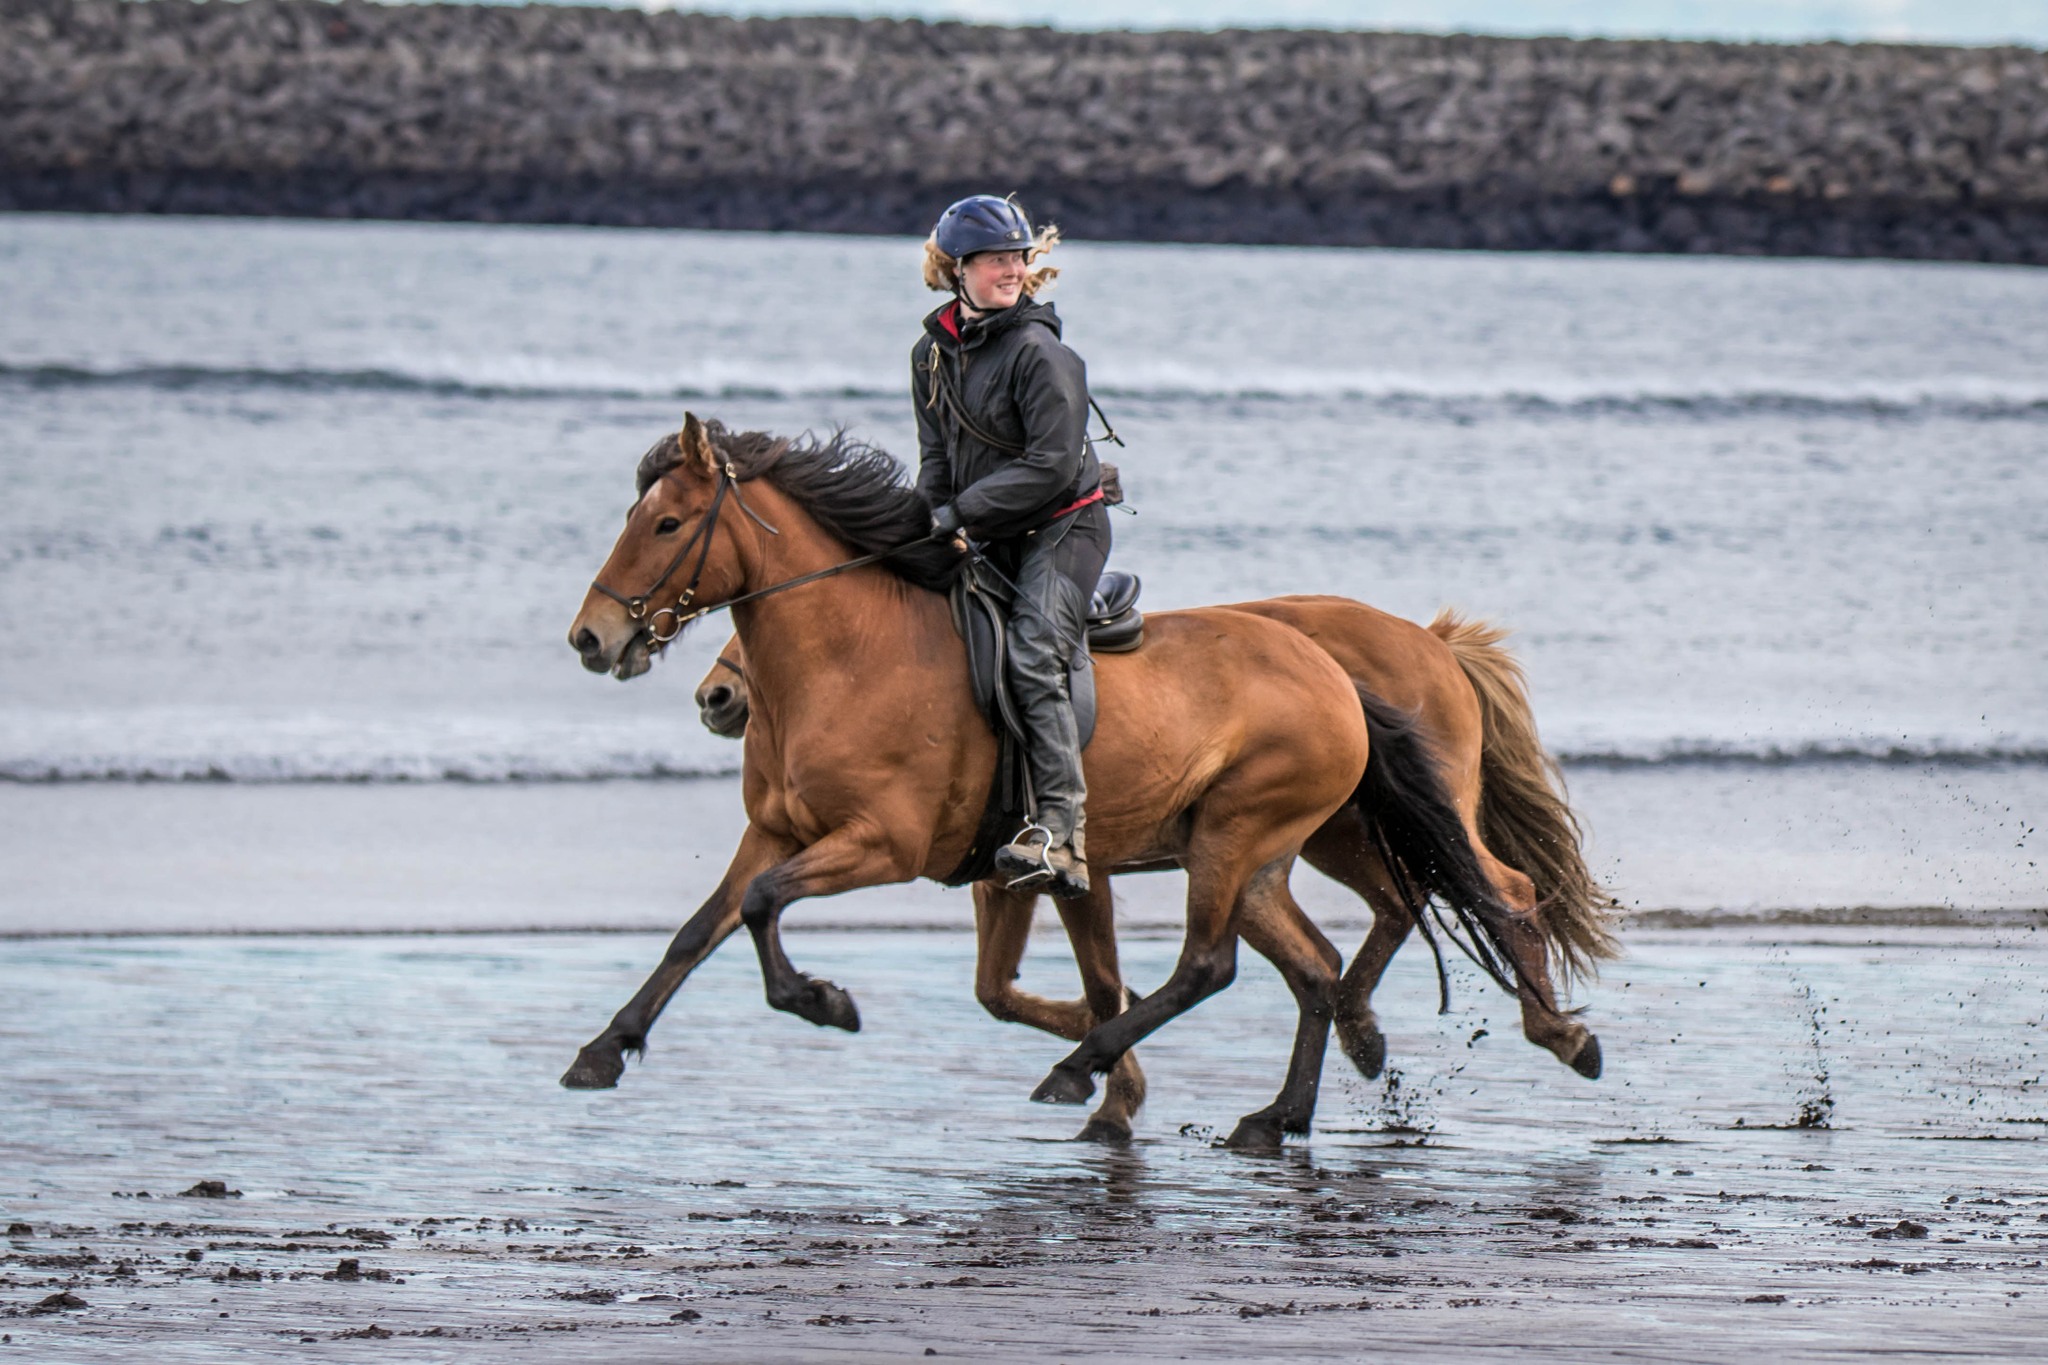 Iceland horse riding holidays